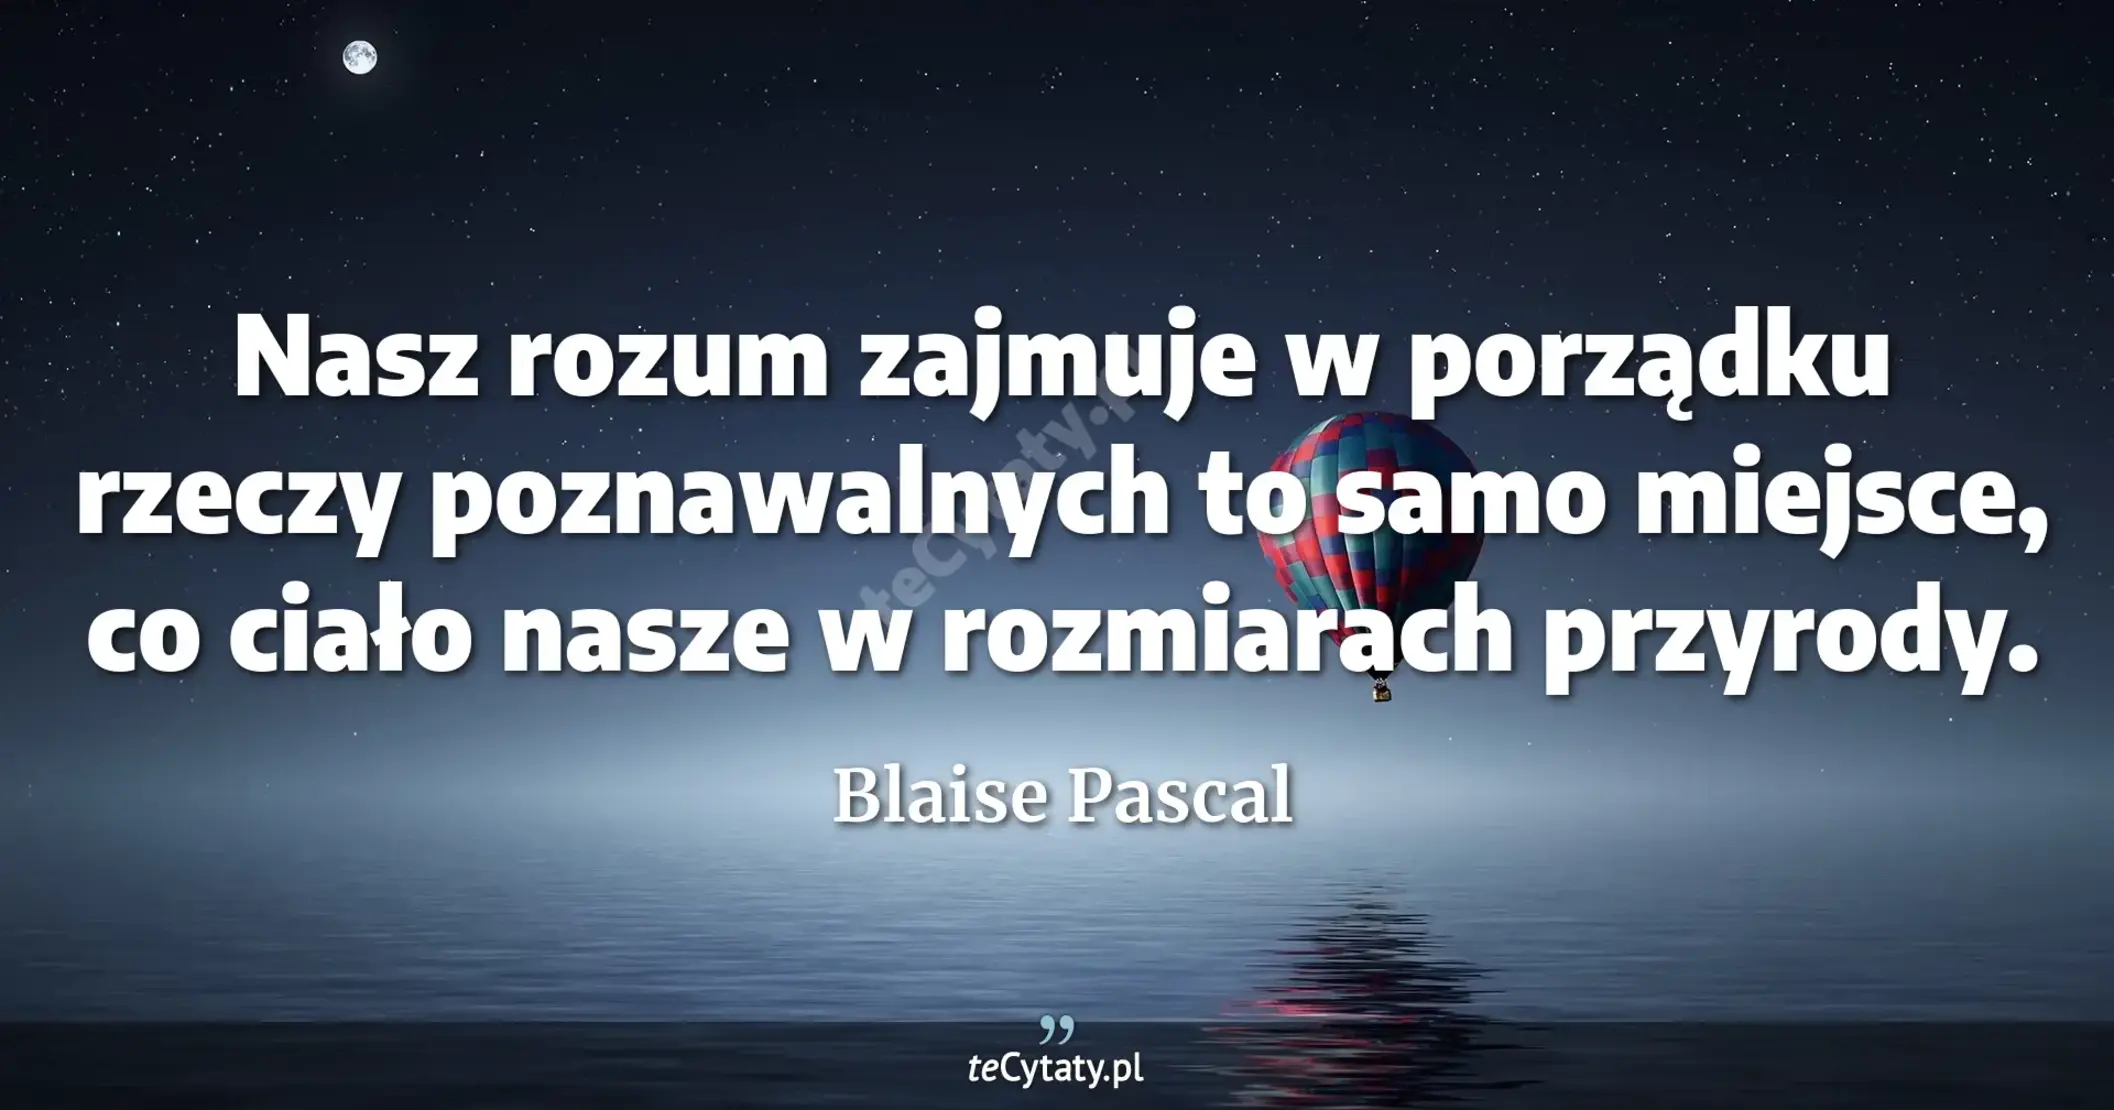 Nasz rozum zajmuje w porządku rzeczy poznawalnych to samo miejsce, co ciało nasze w rozmiarach przyrody. - Blaise Pascal